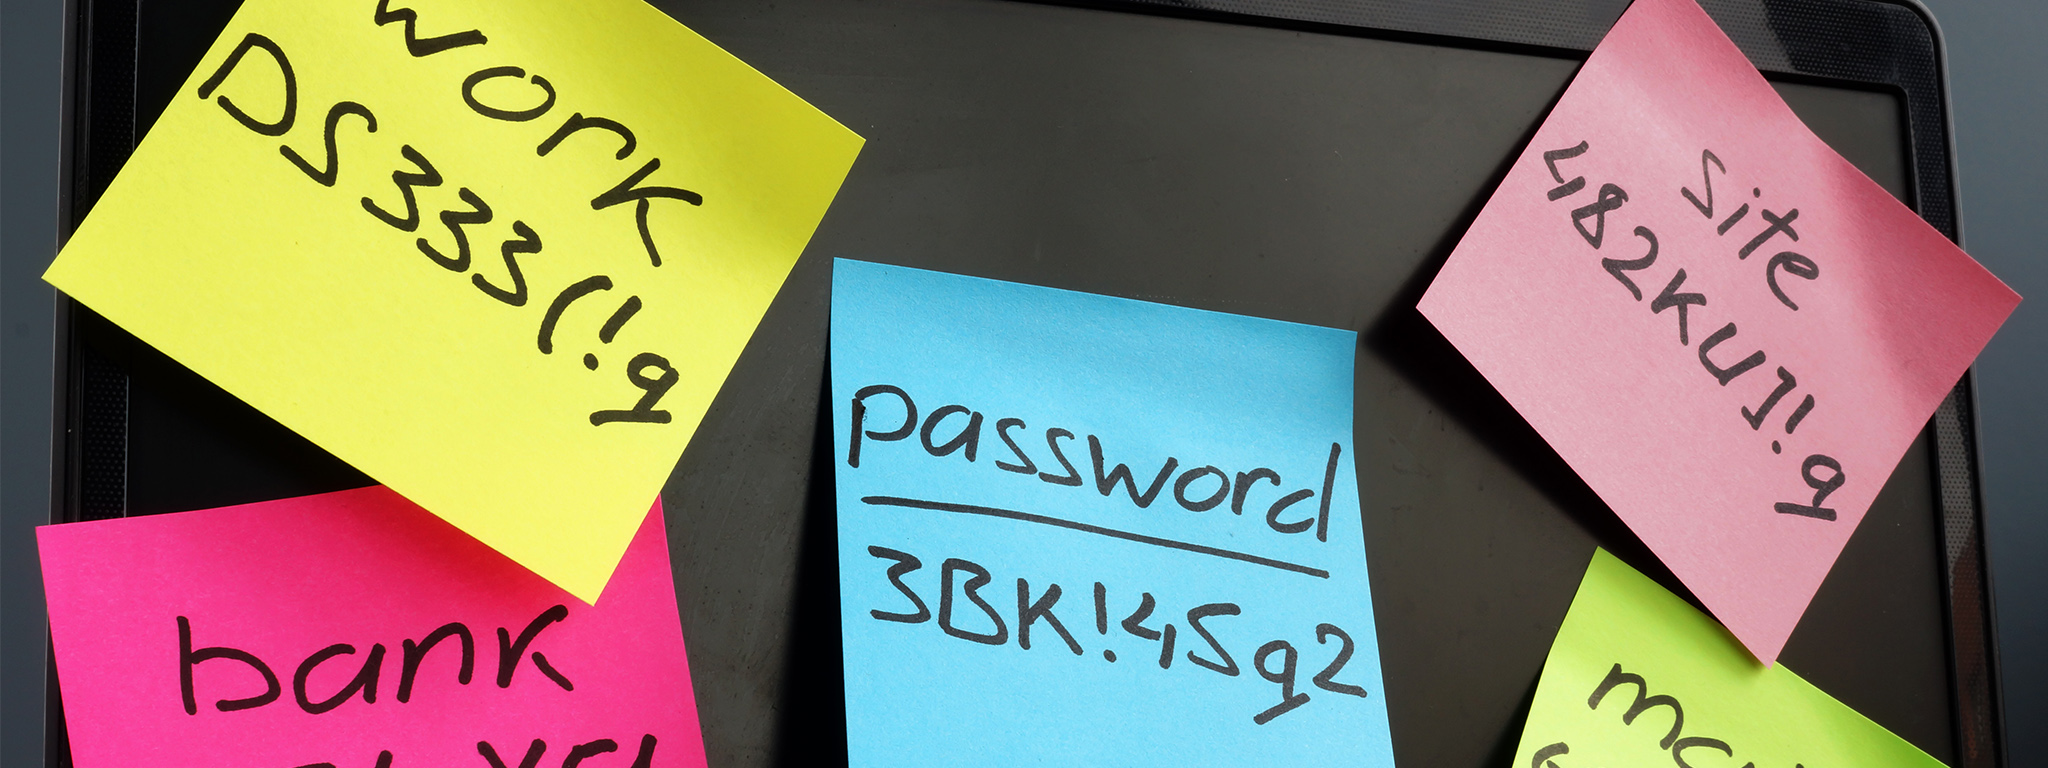 Quản lý mật khẩu. Máy tính xách tay có dán nhiều mảnh giấy nhớ ghi các cụm mật khẩu phức tạp trên màn hình.